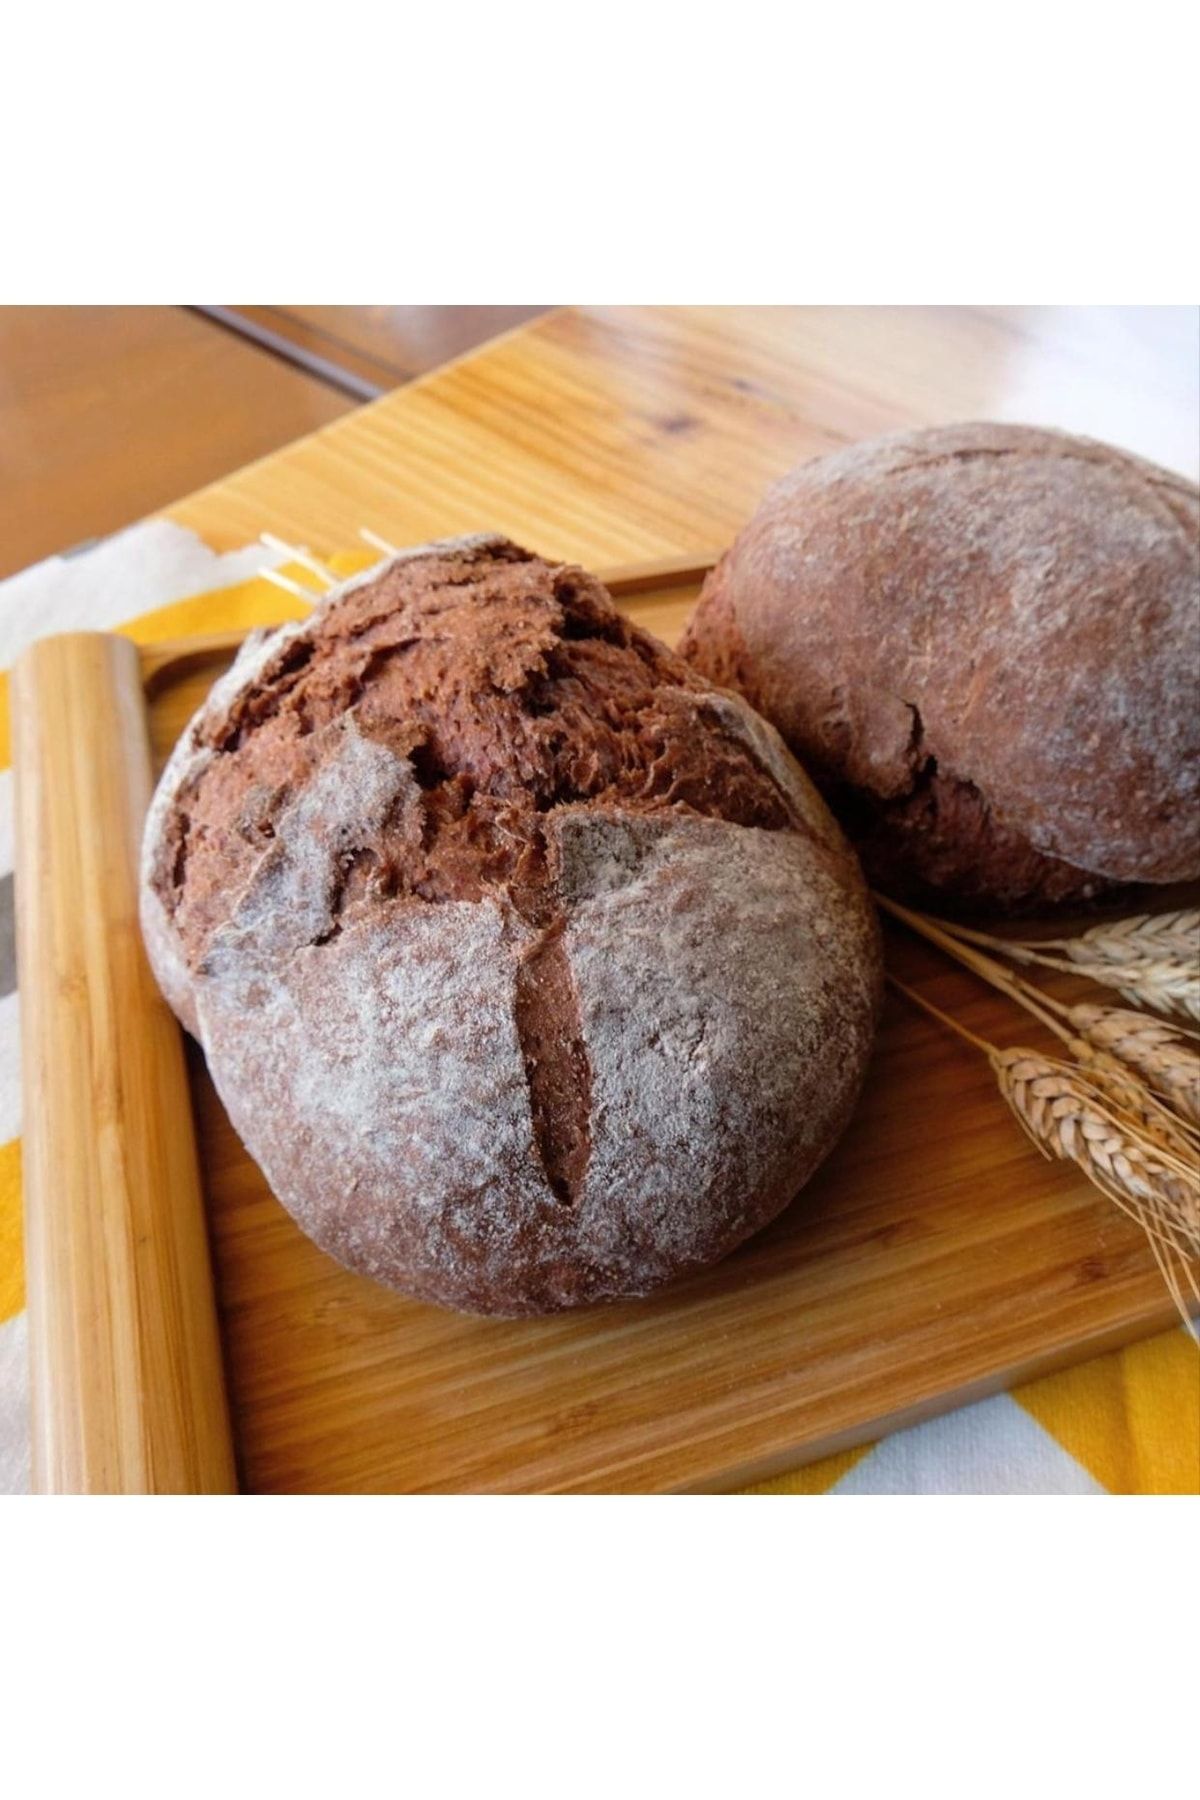 Güneşer Bakery % 100 Ekşi Mayalı Glutensiz Mor Ekmek 750 gram